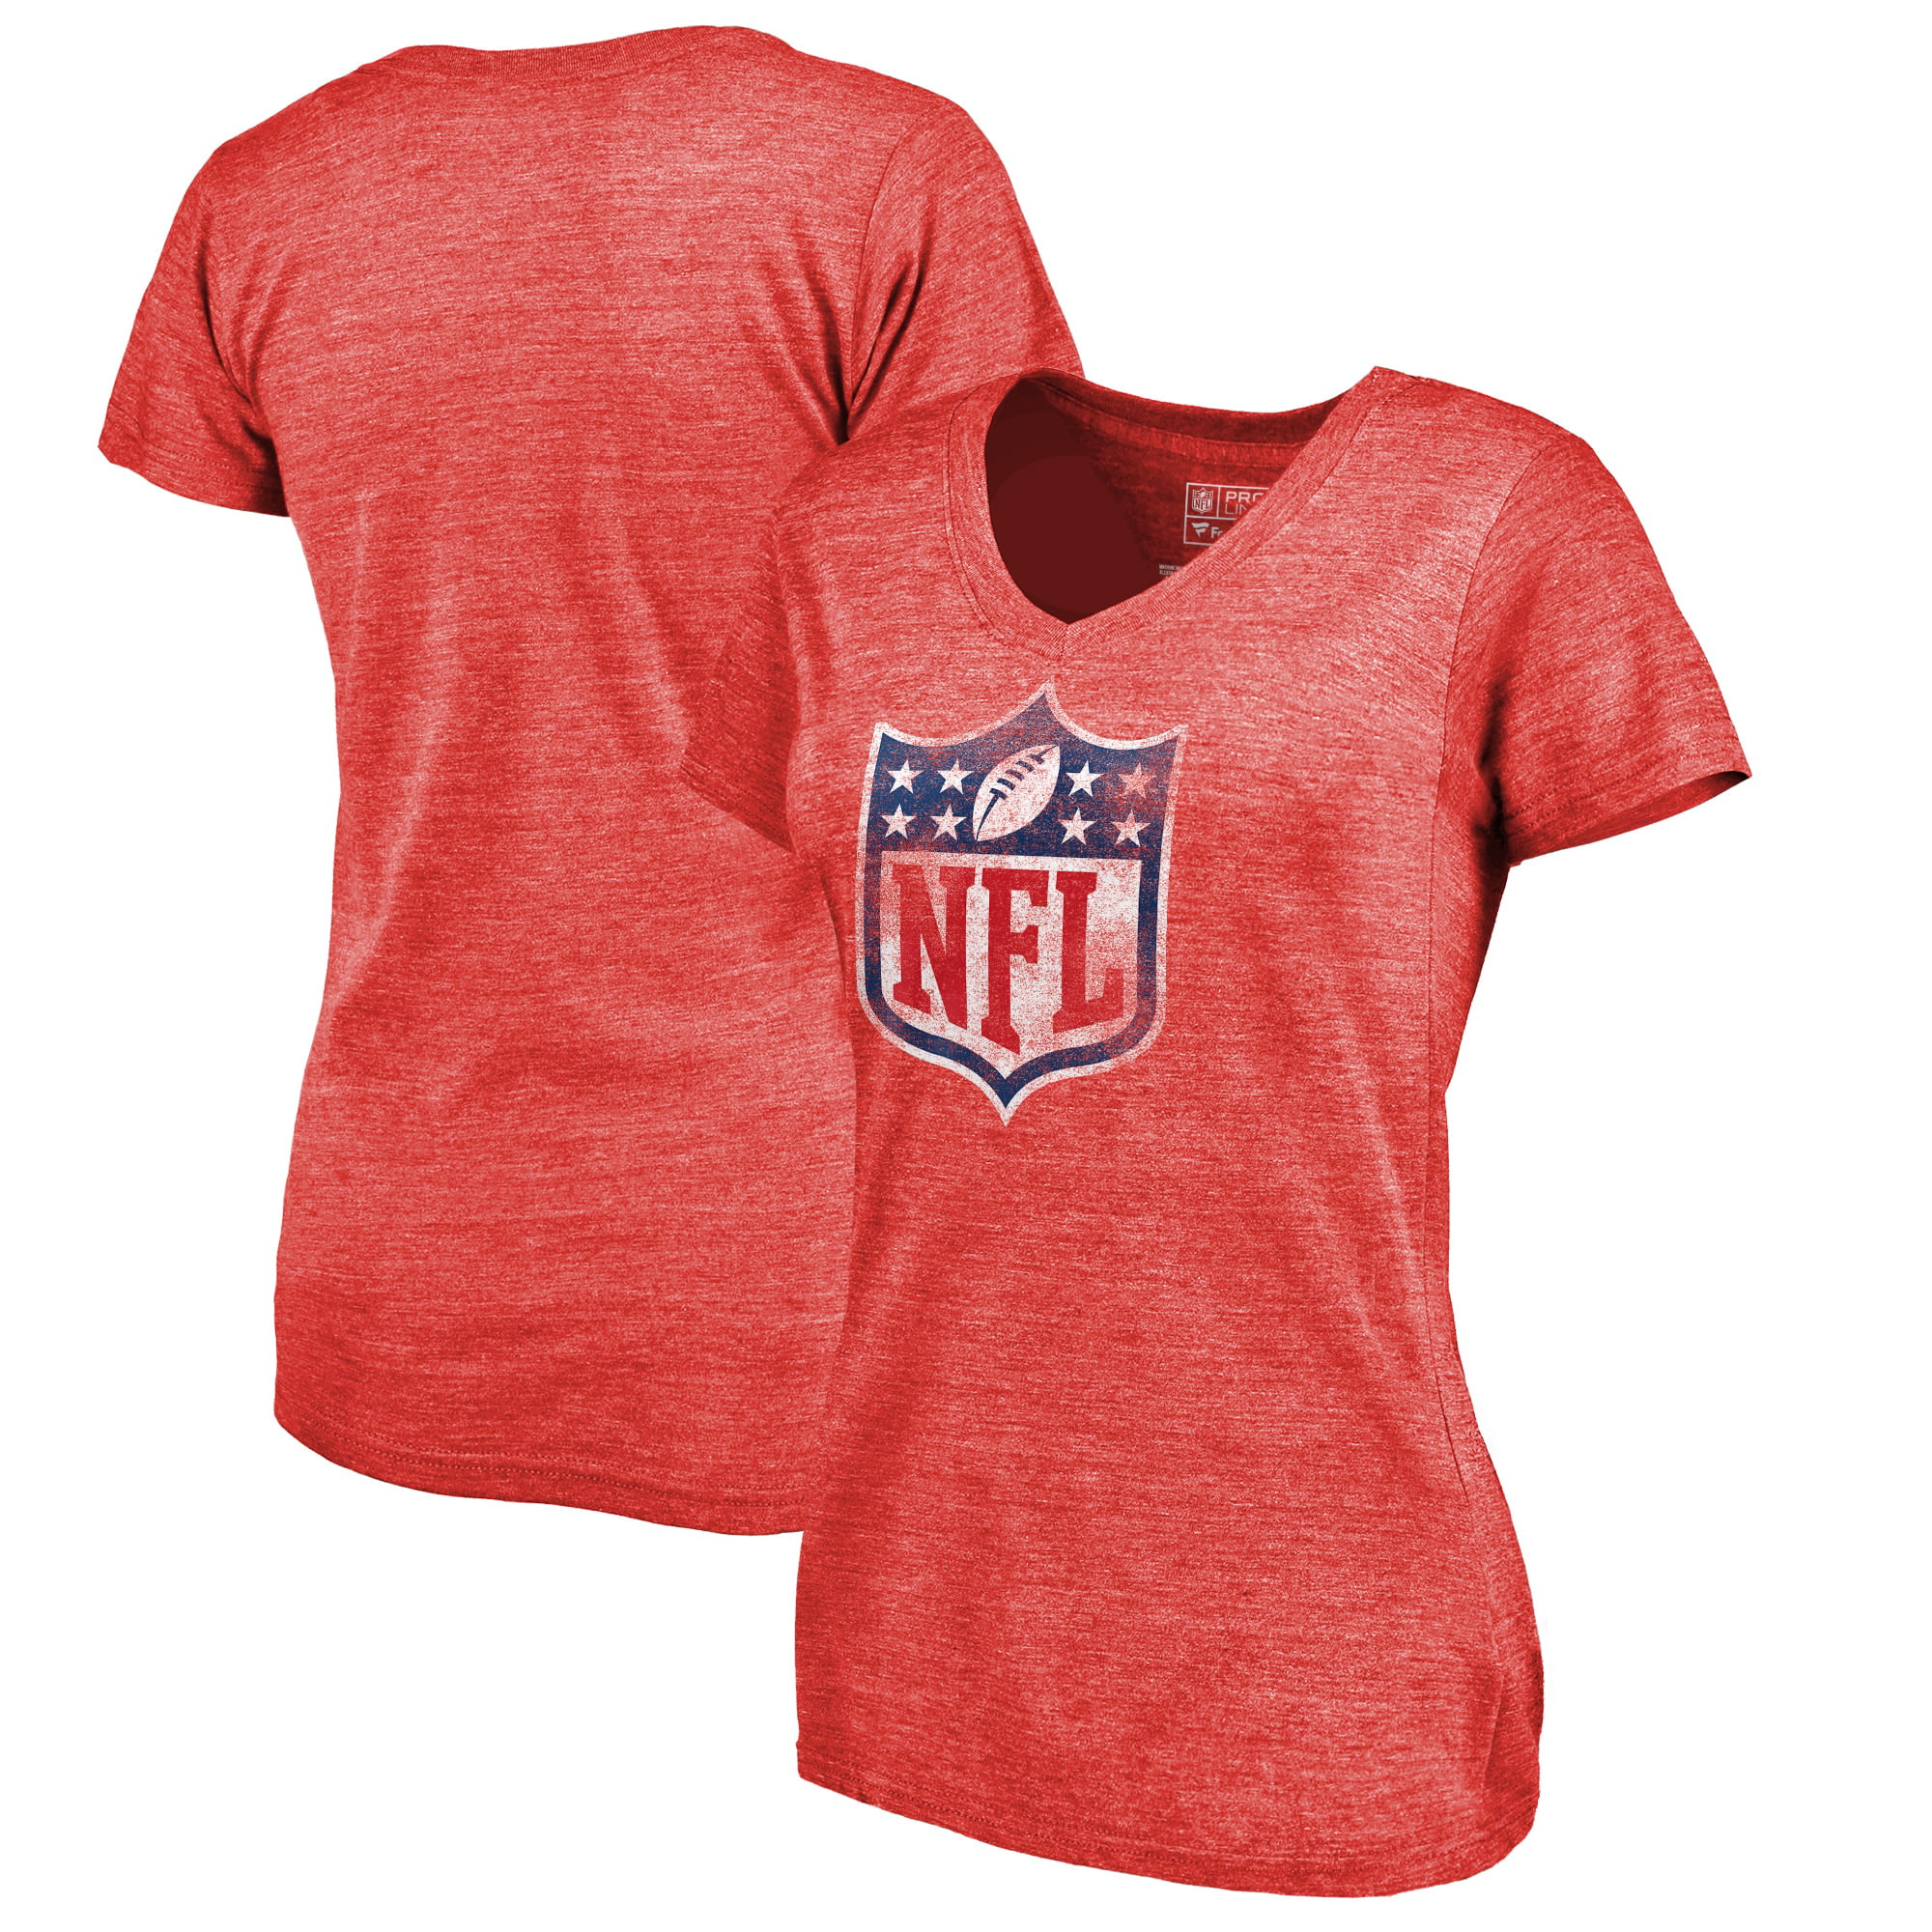 Fanatics - NFL Pro Line by Fanatics Branded Women's NFL Shield ...